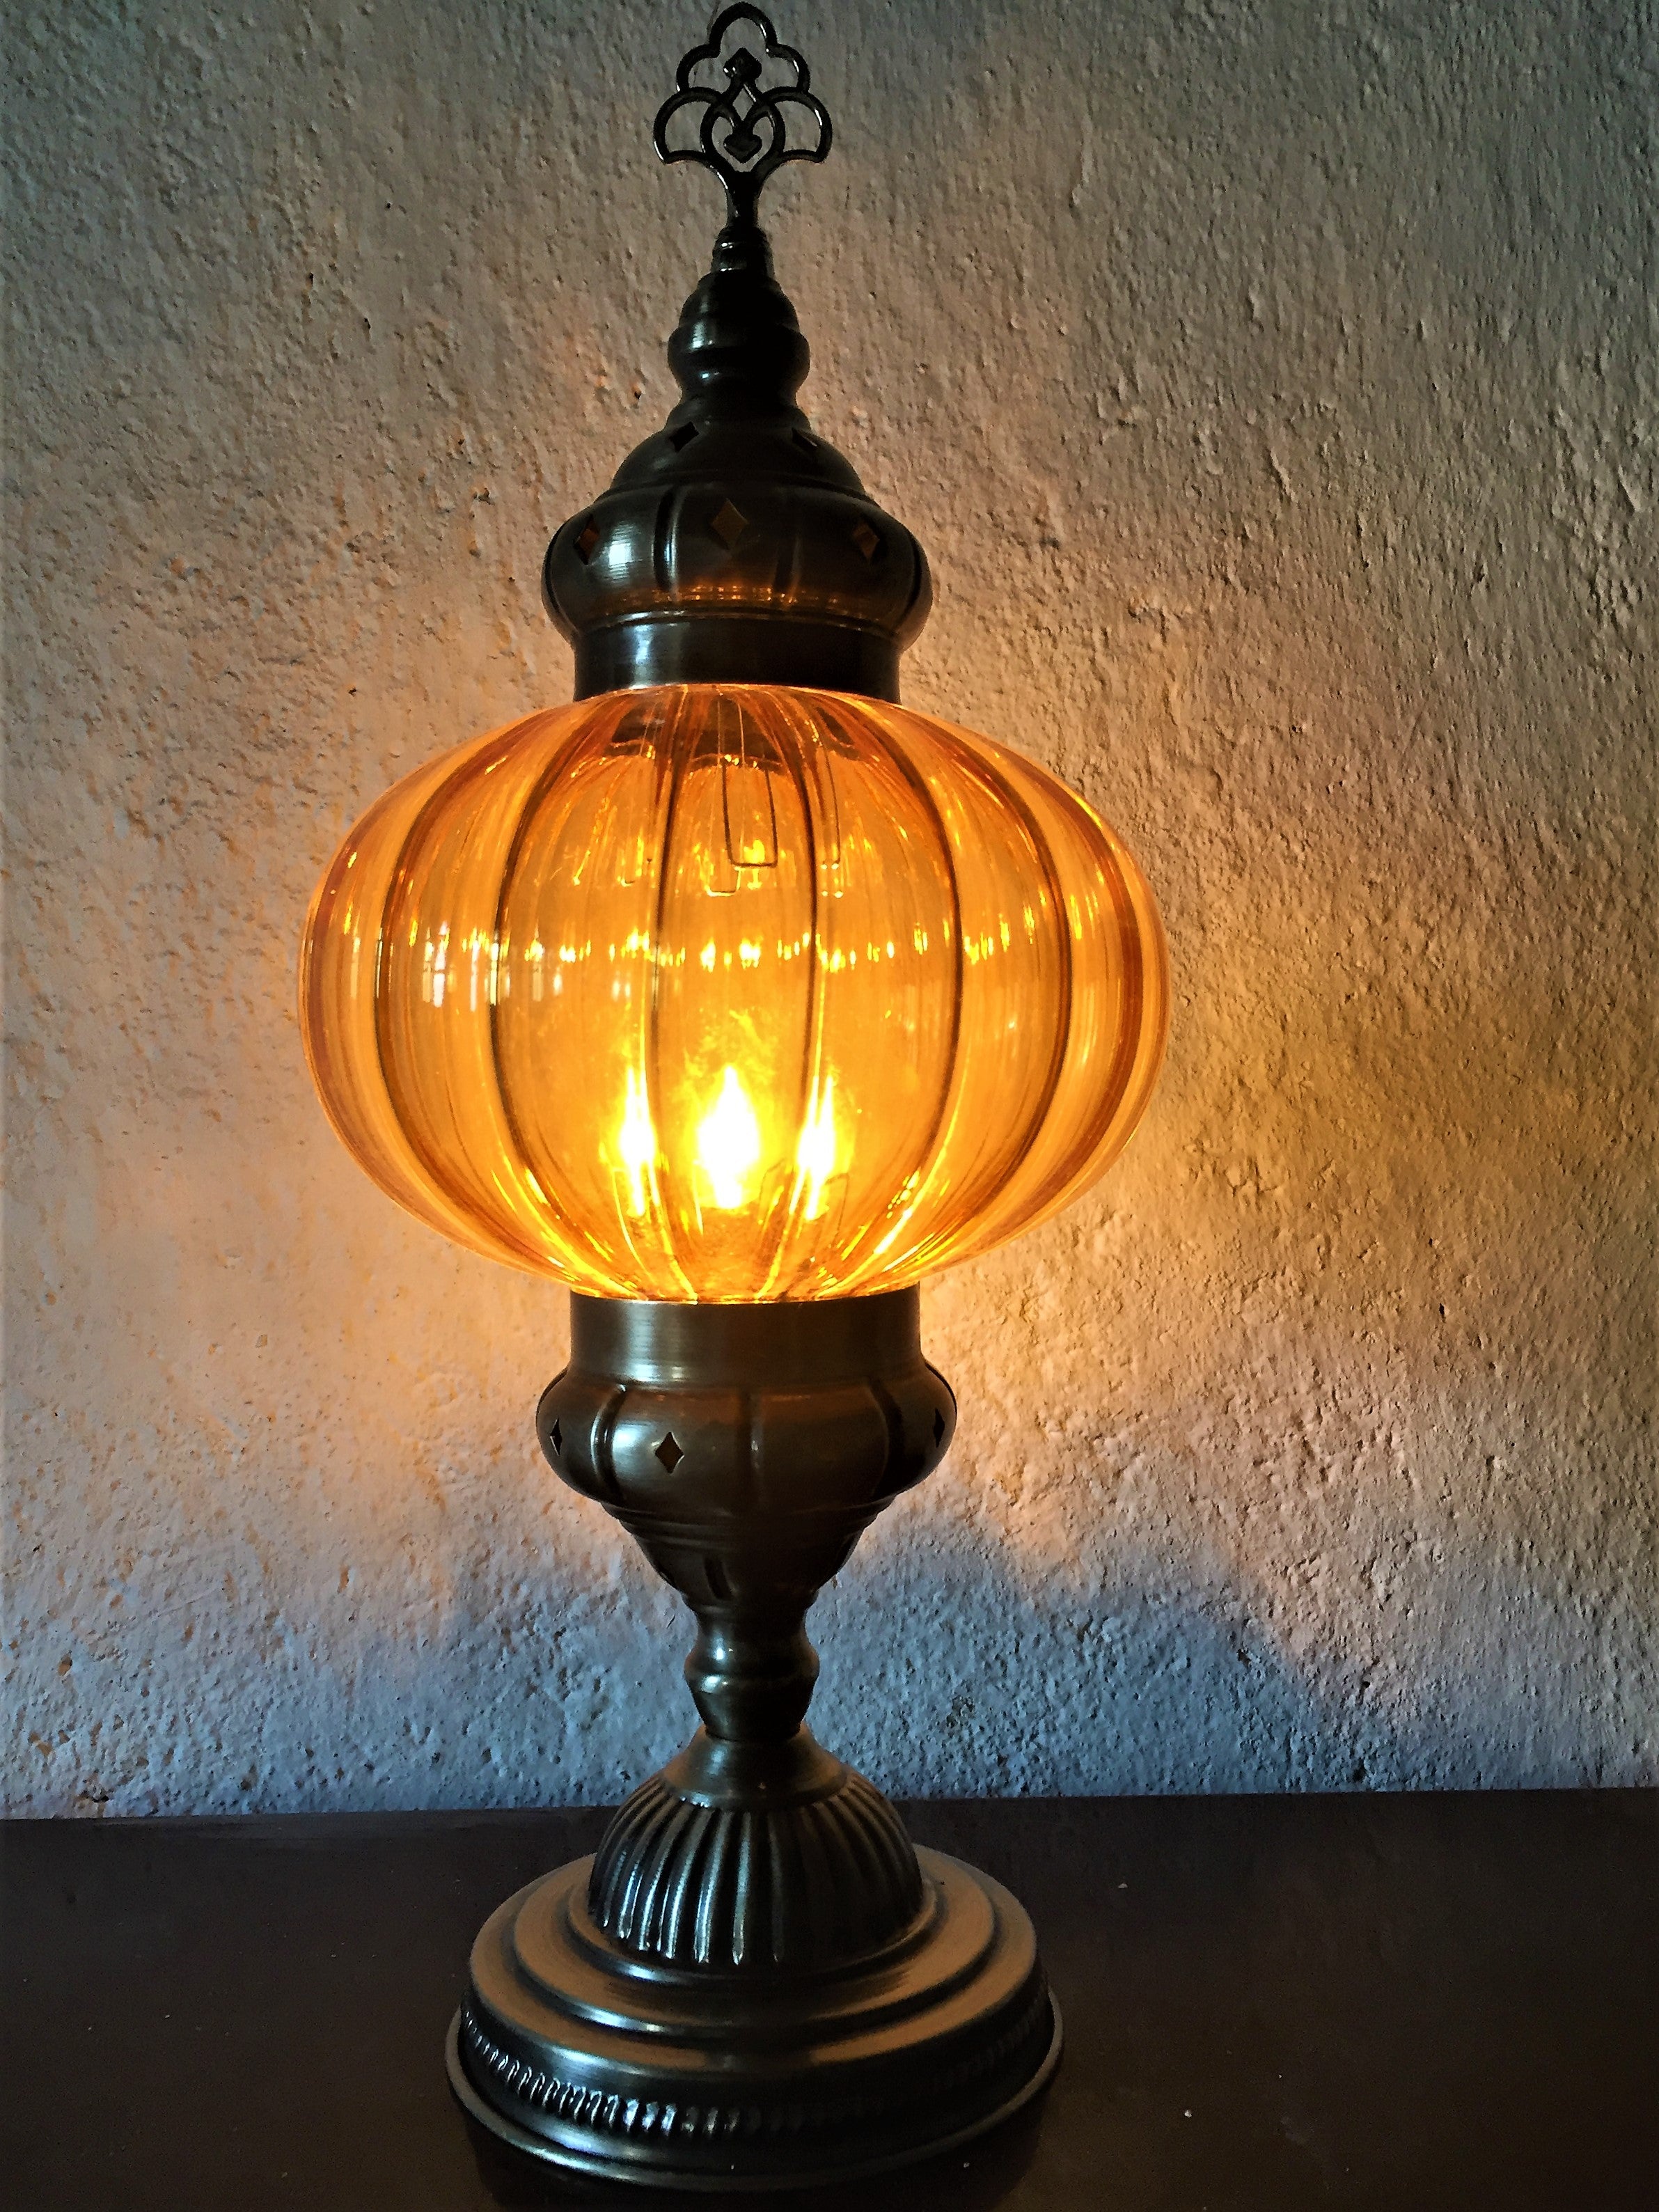 Full Moon Table Lamp - Portakal